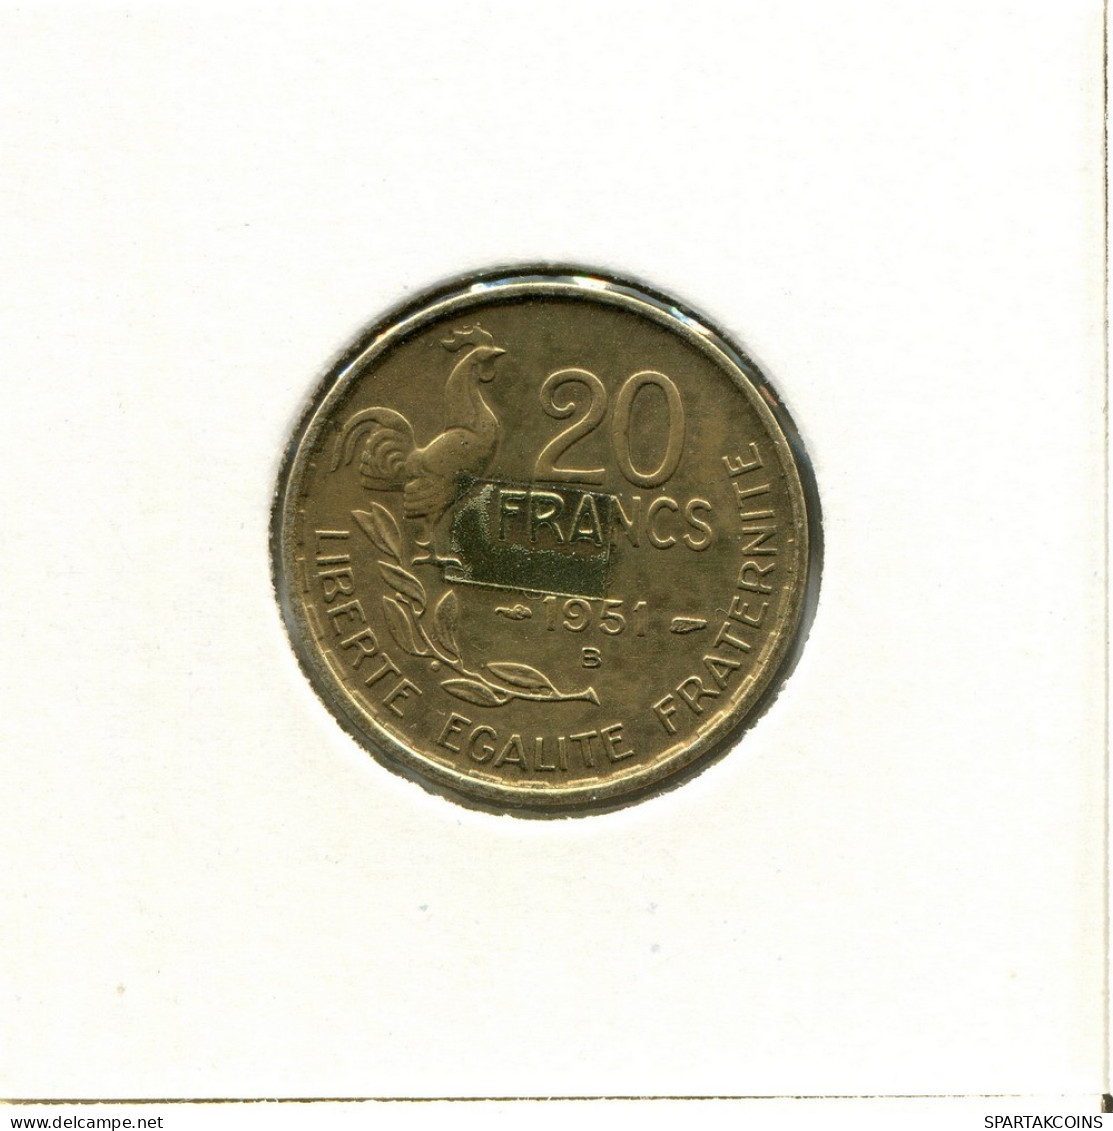 20 FRANCS 1951 FRANCE Pièce #BB629.F.A - 20 Francs